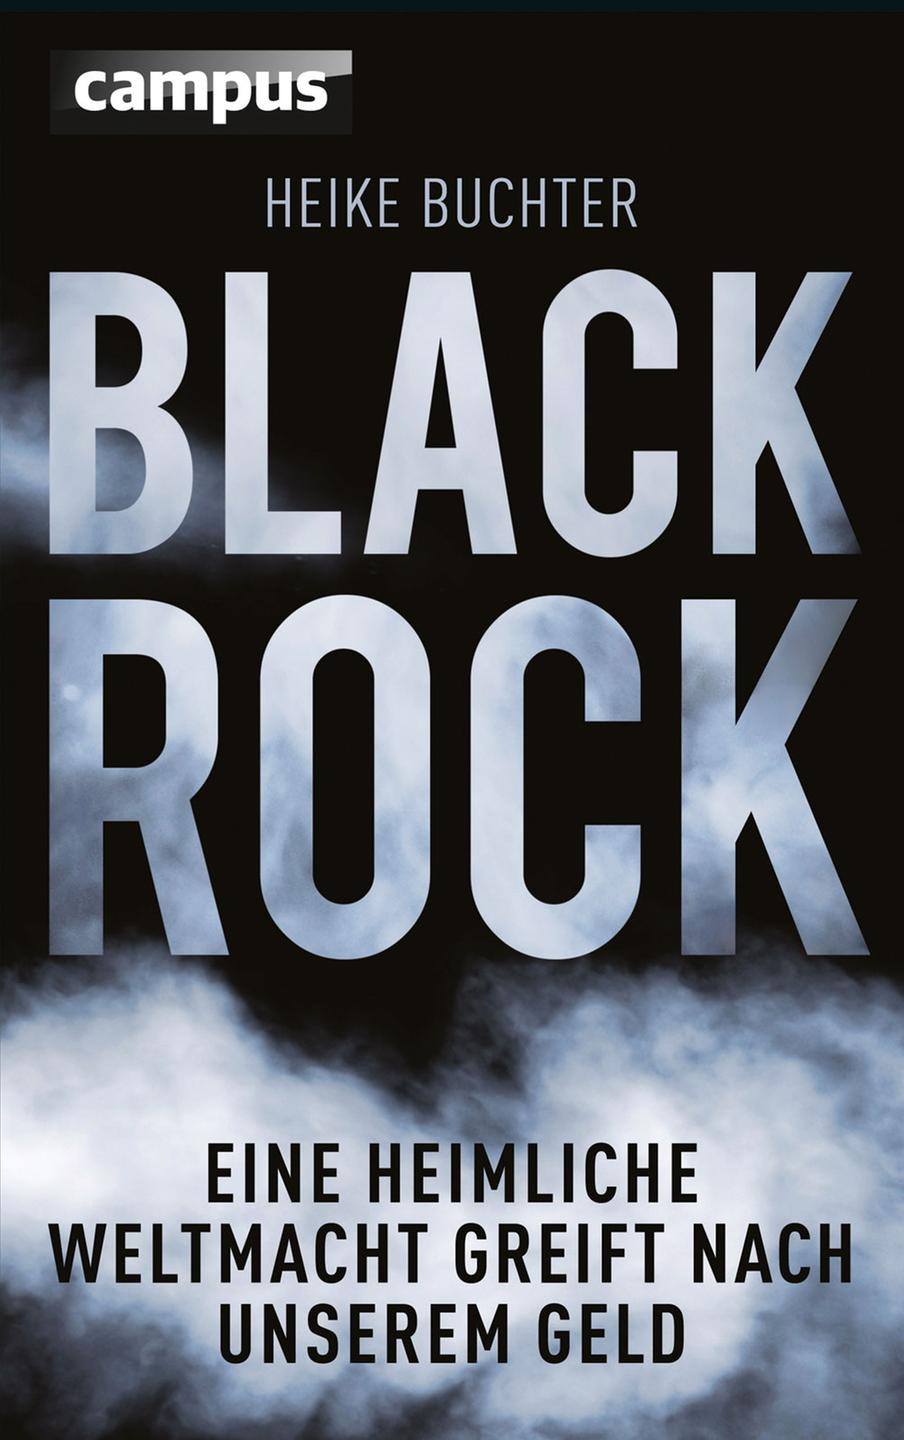 Buchcover: "BlackRock" von Heike Buchter